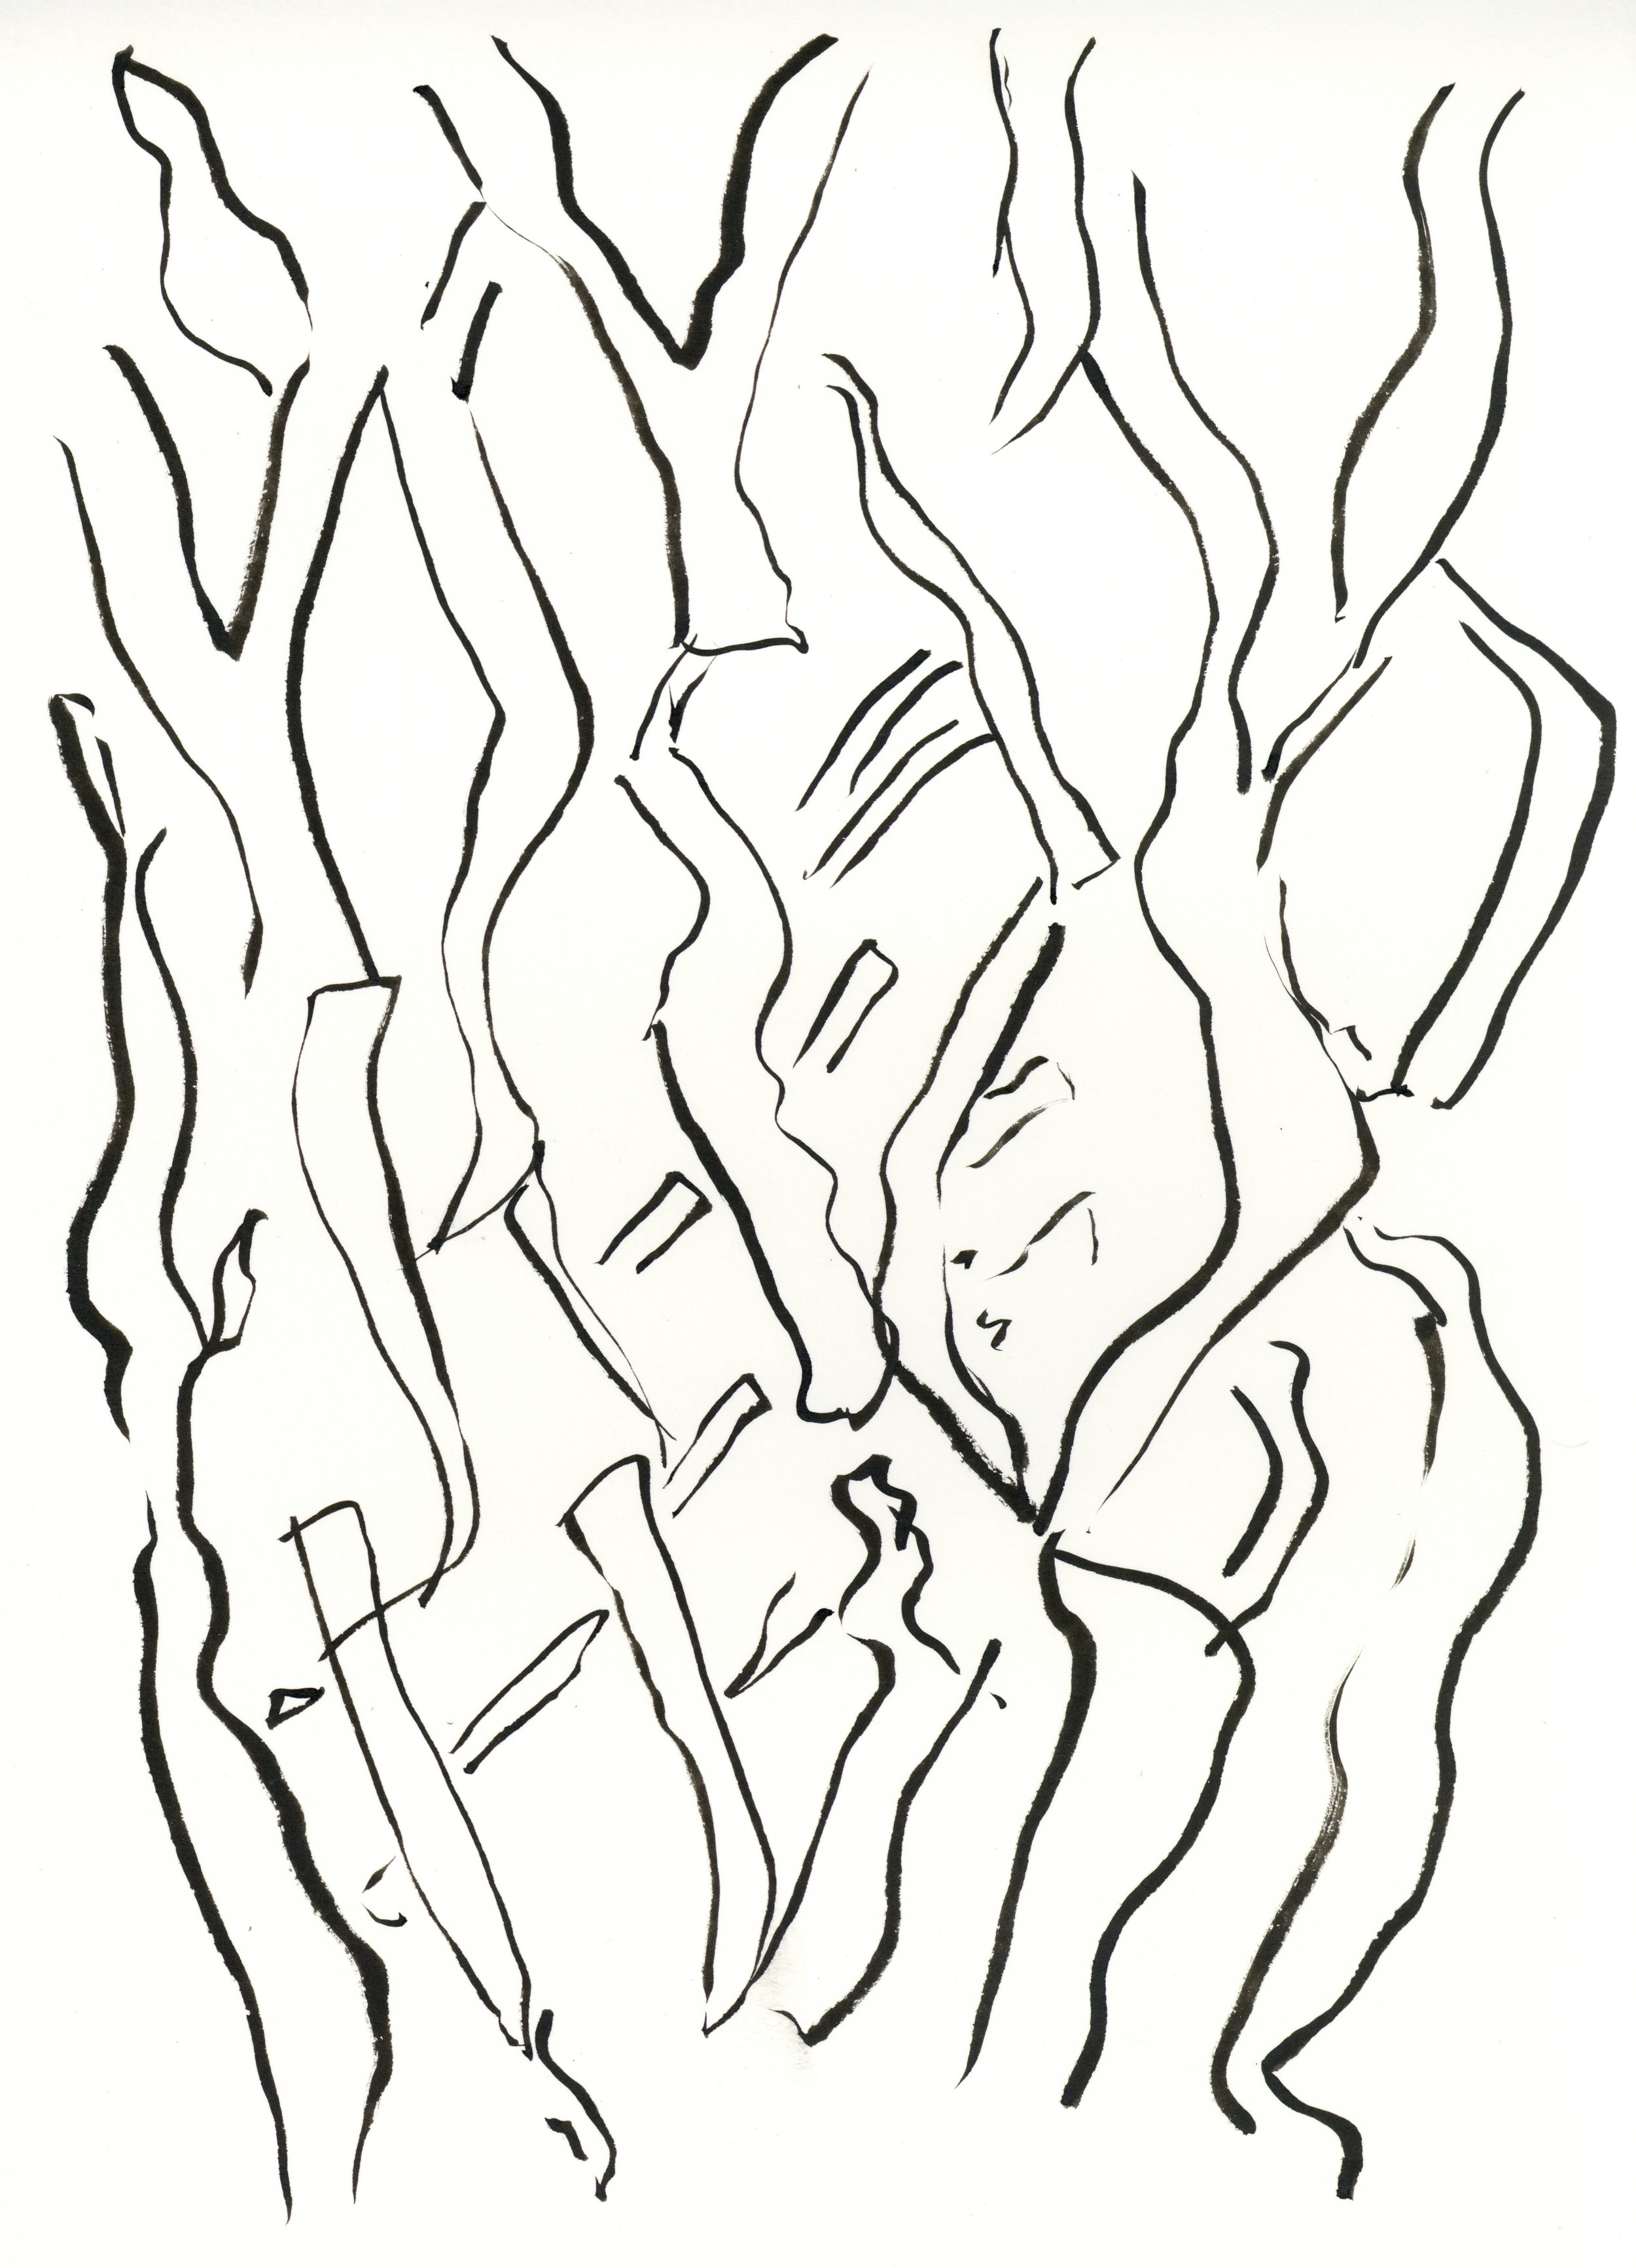 kate lewis art.tree sketch.JPG